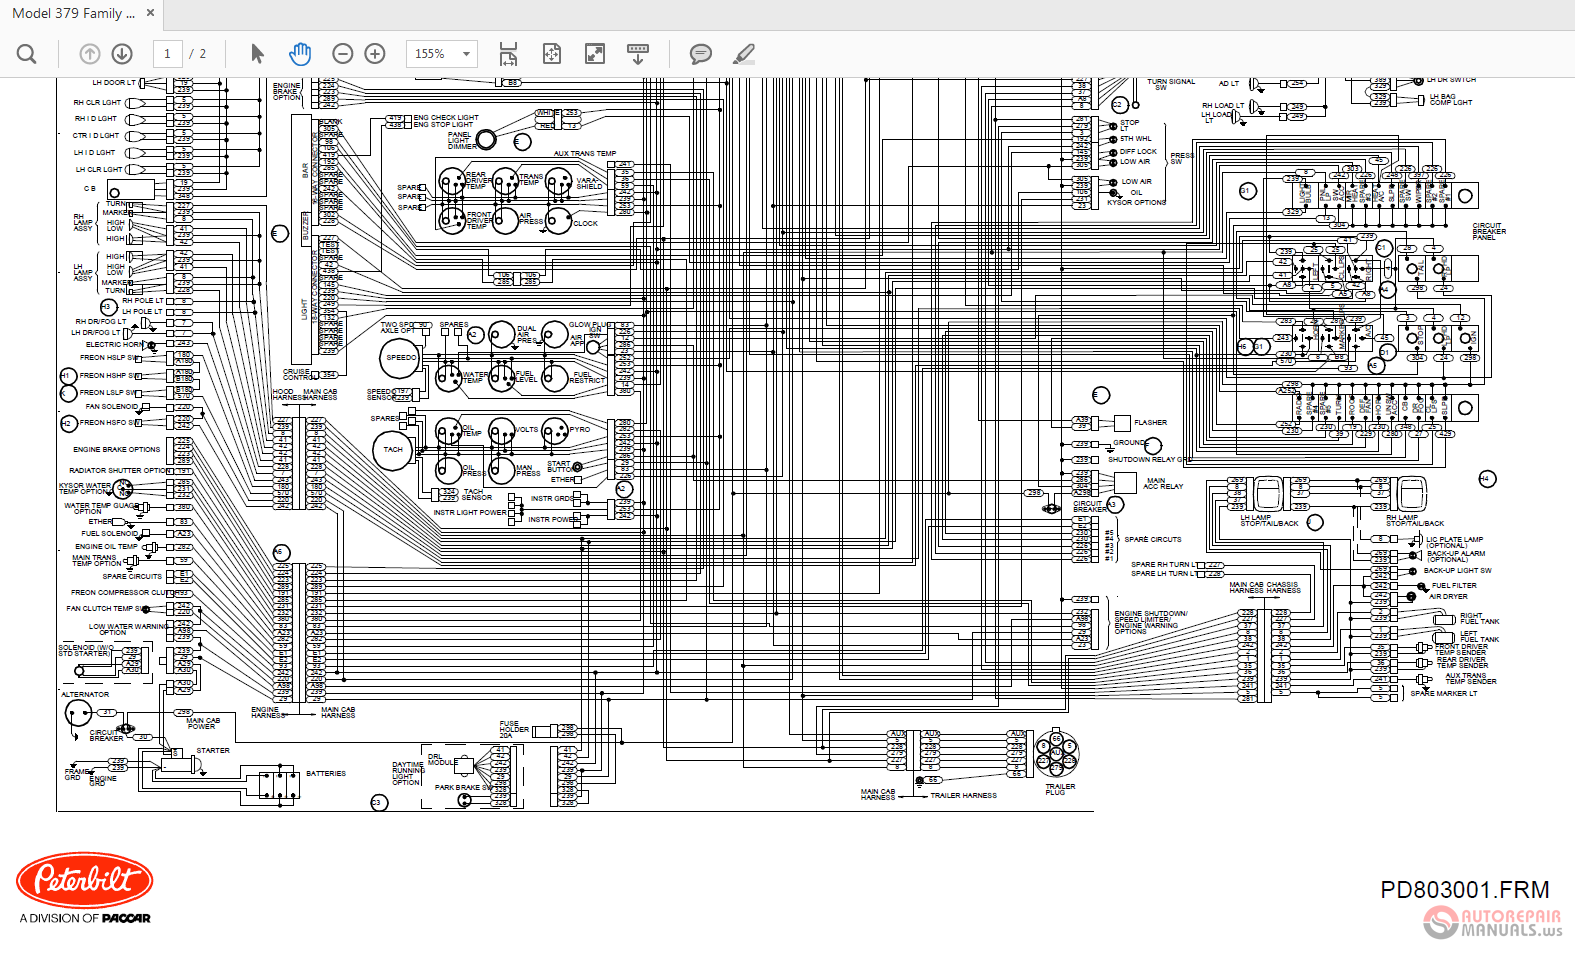 Peterbilt 379 SK19517 Family Wiring Diagrams | Auto Repair Manual Forum